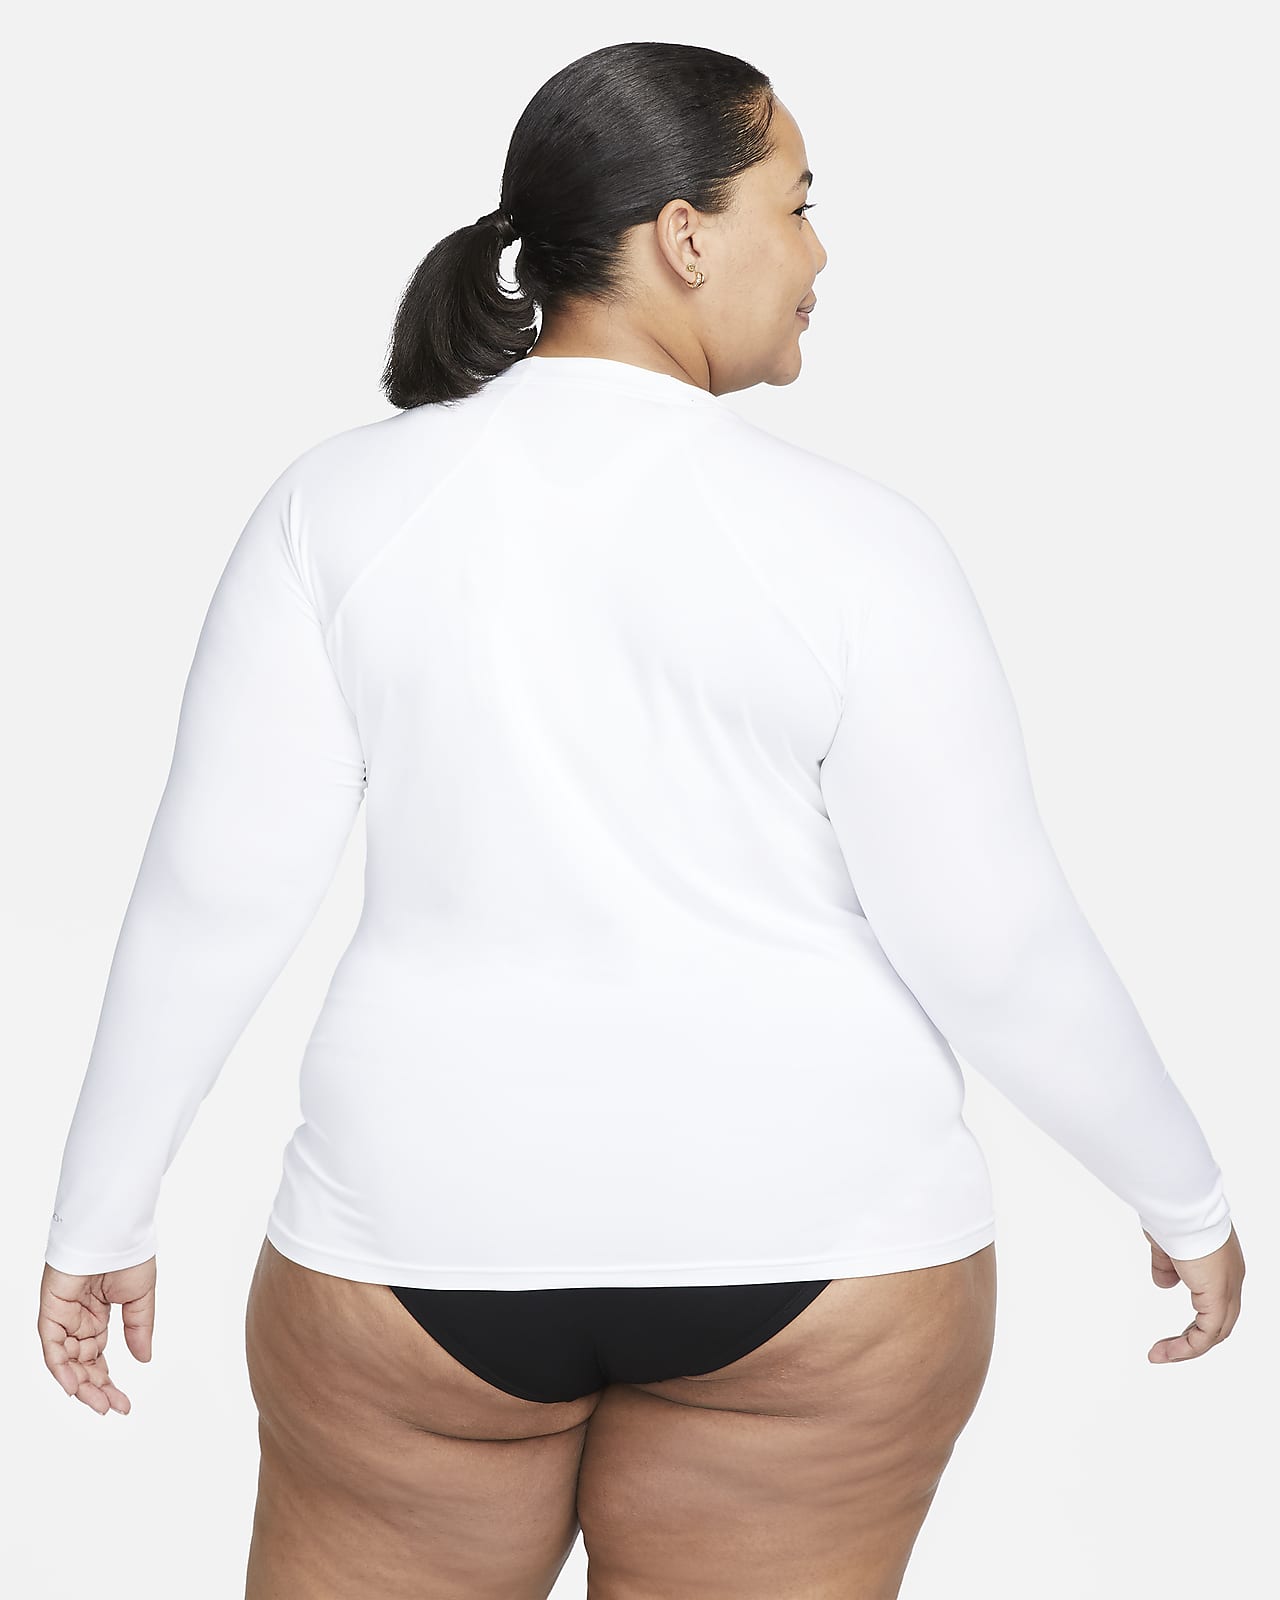 Women's Plus Size Bodysuits in KSA. Nike SA